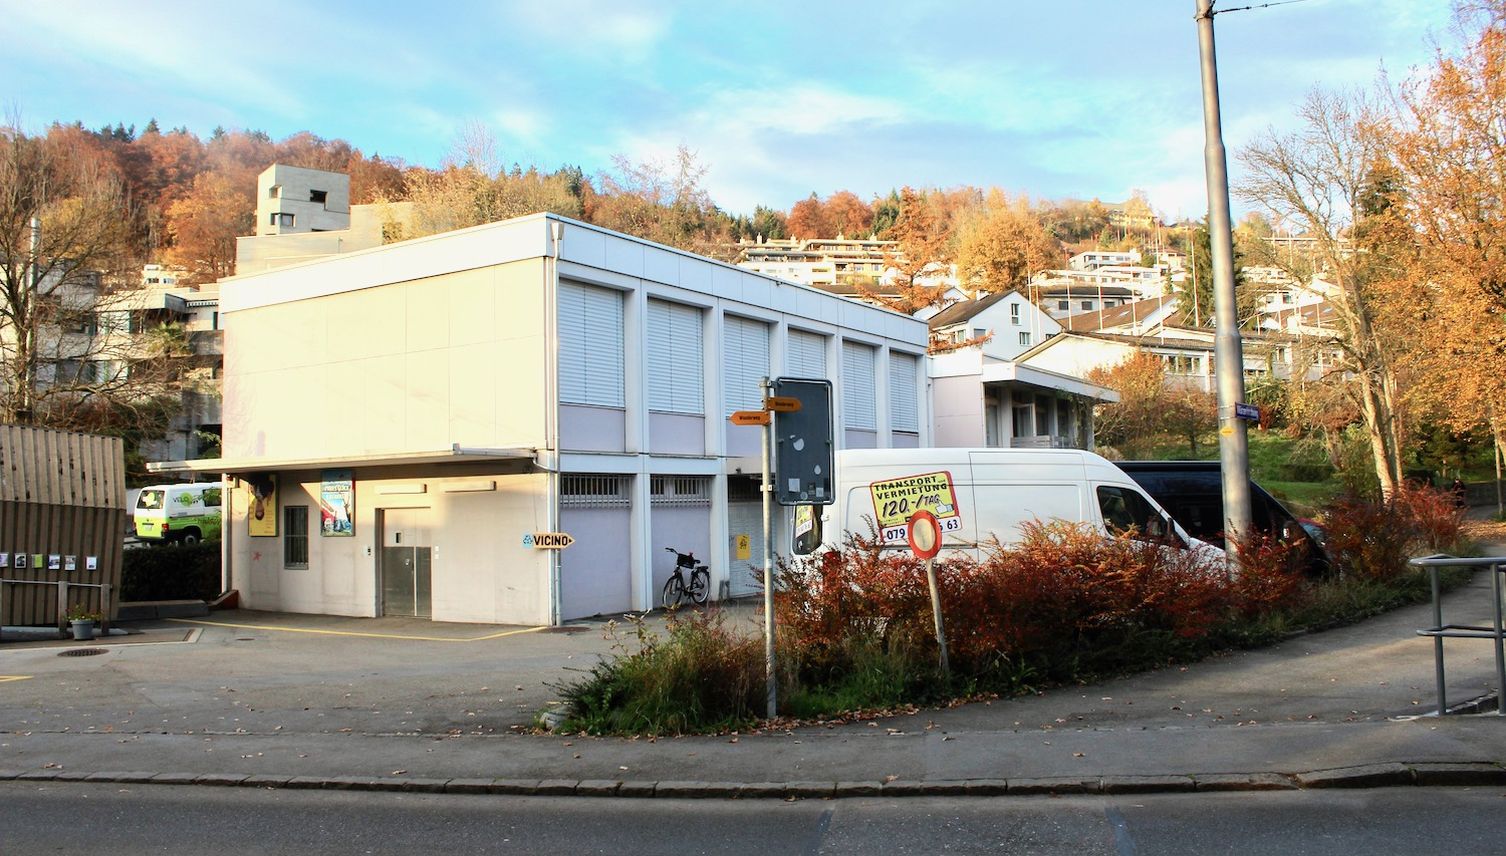 Gretchenfrage: Baut die Kirche in Luzern gemeinnützig genug?